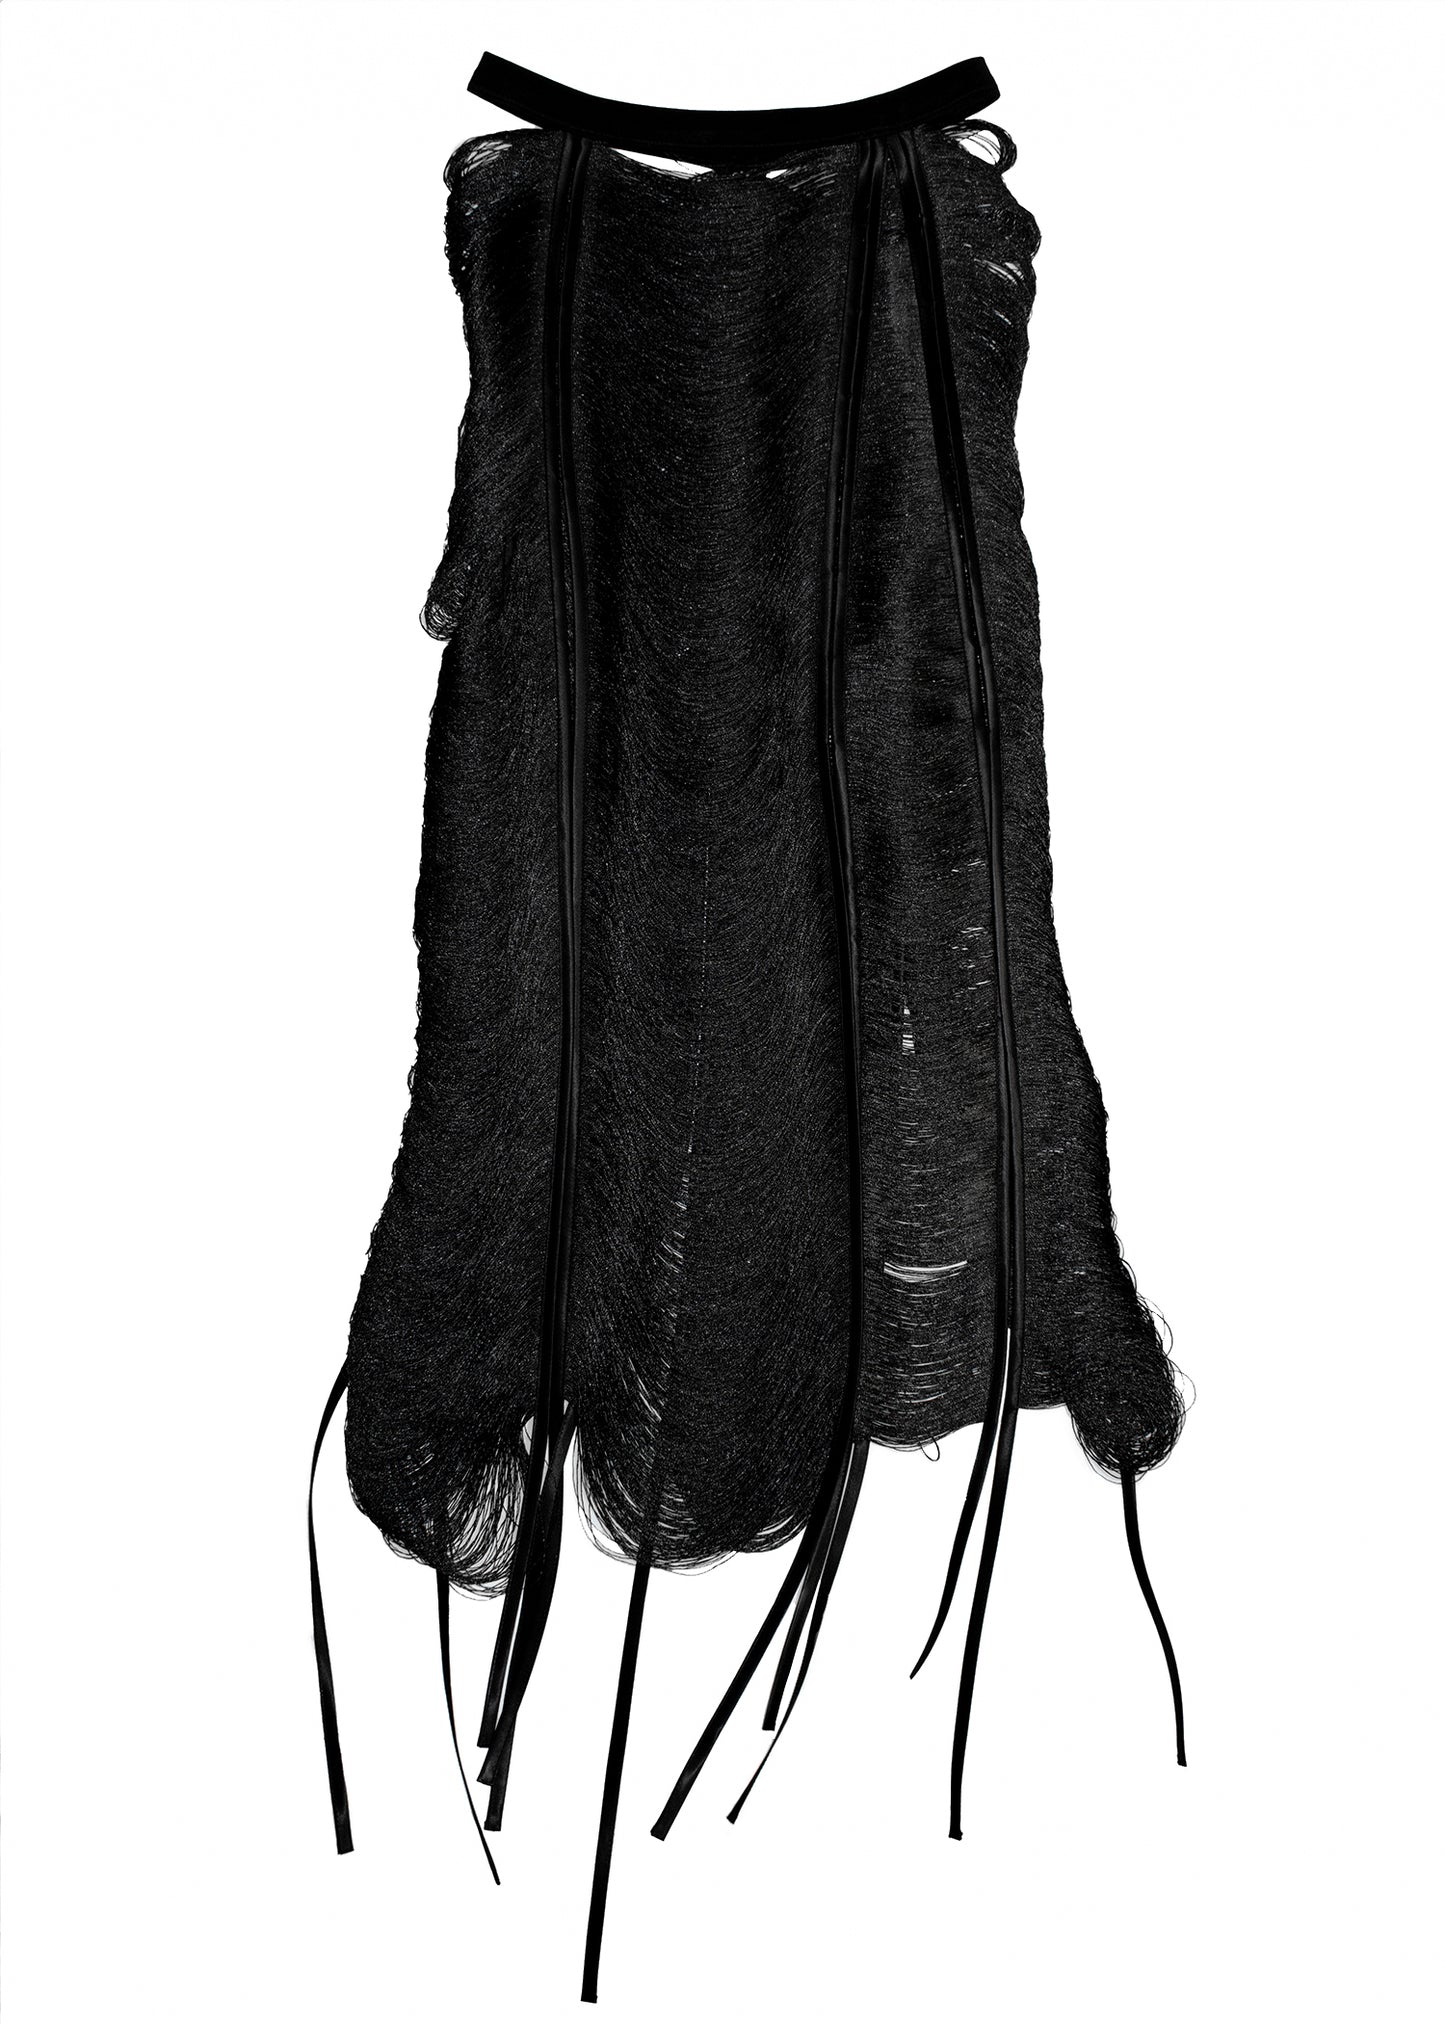 Threads Midi Skirt - Black, White or Sand